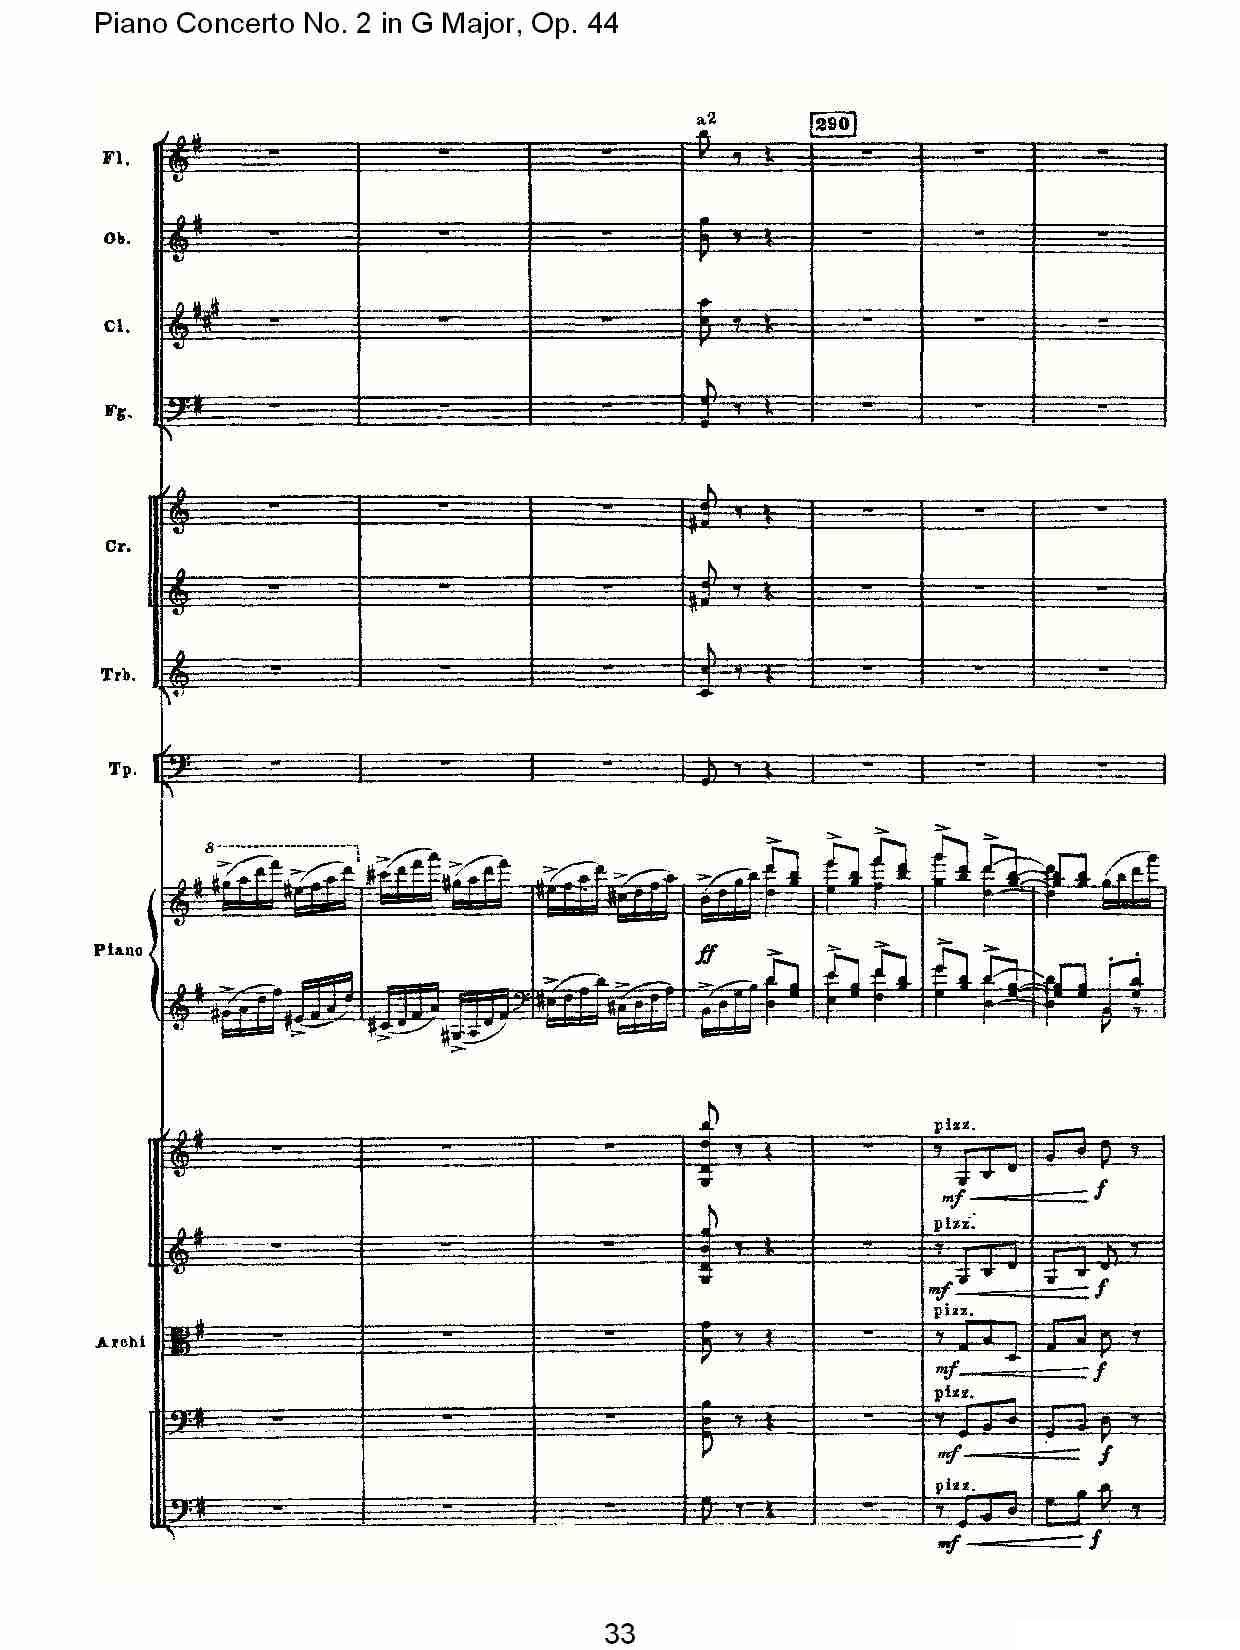 G大调第二钢琴协奏曲, Op.44第三乐章（一）钢琴曲谱（图33）